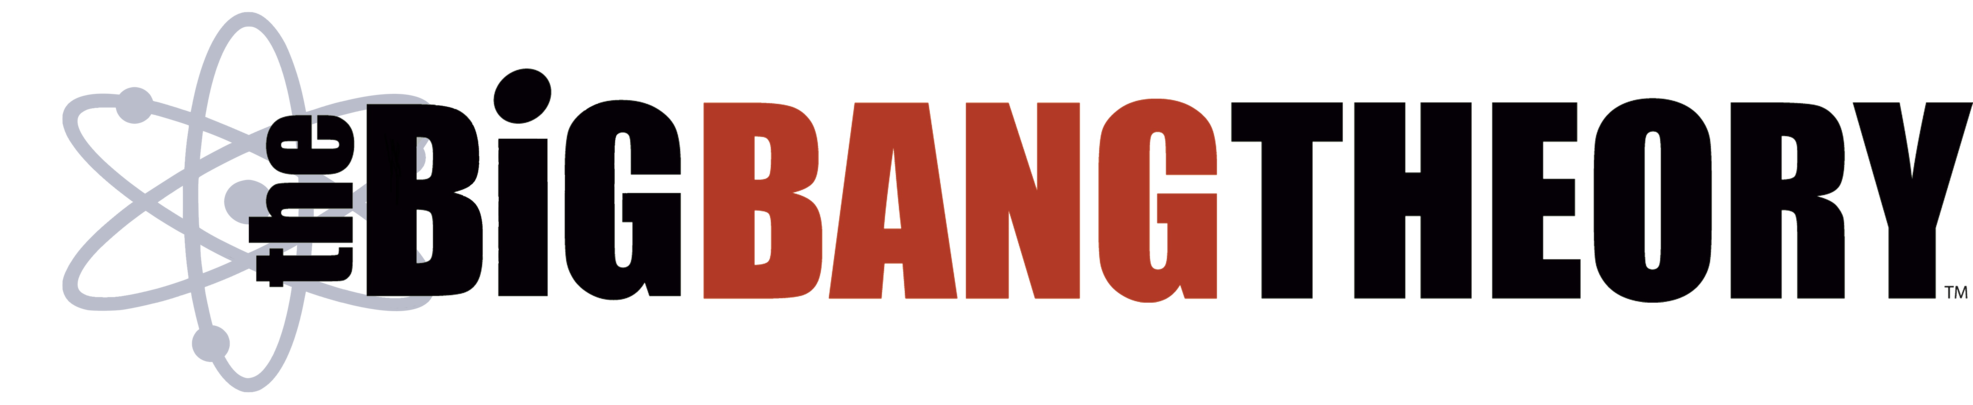 Das Big Bang Theory Logo transparentes Bild